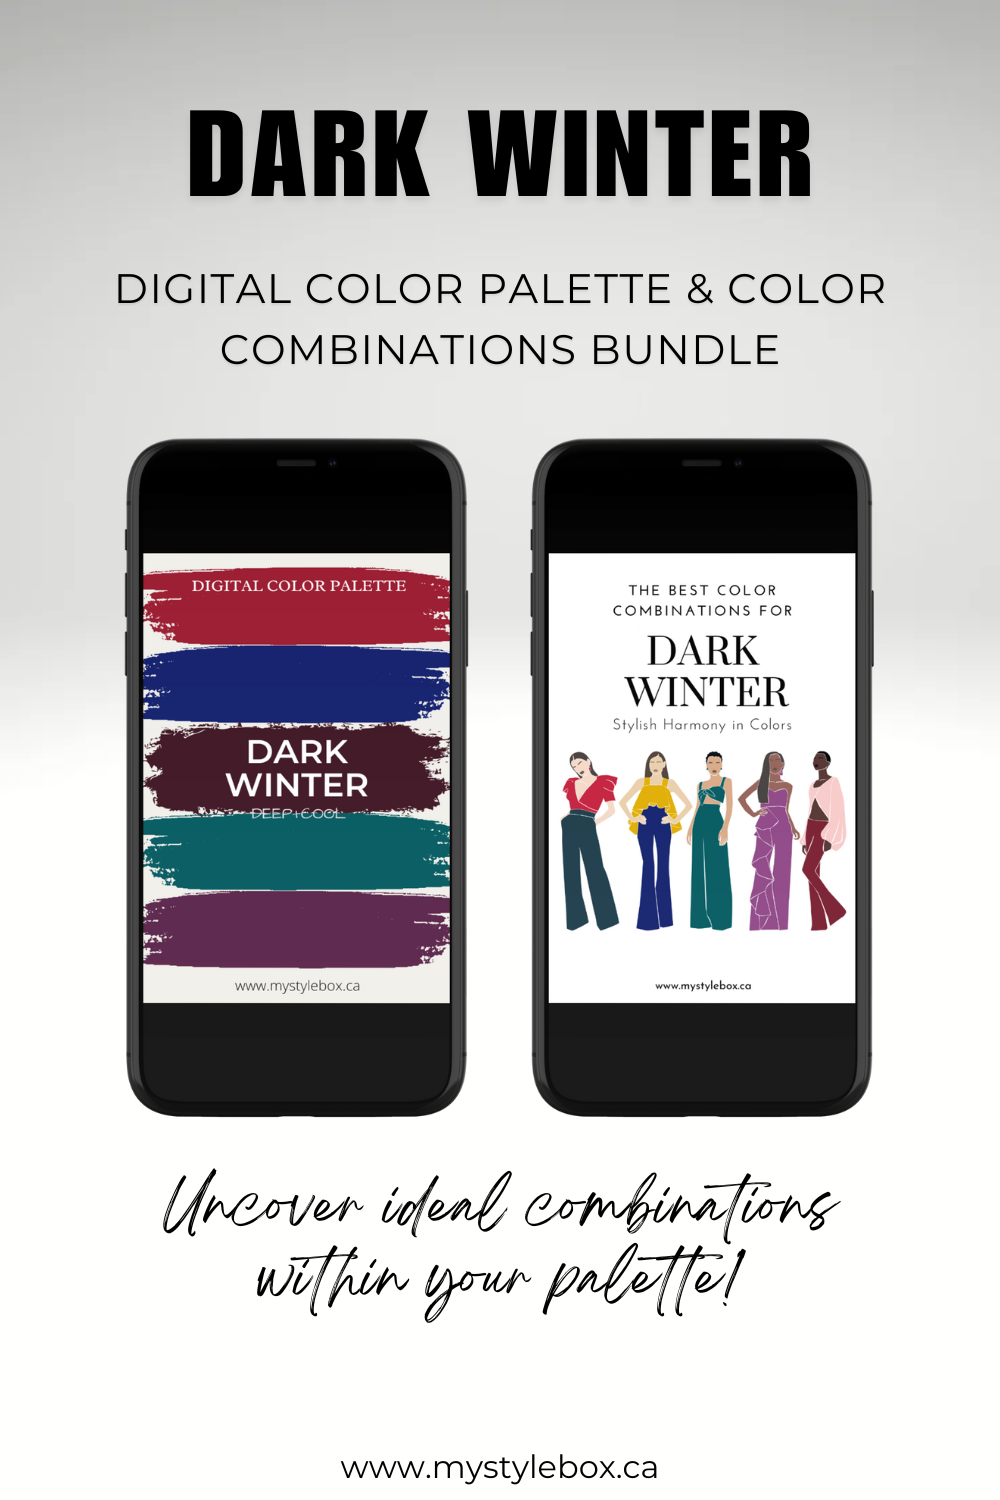 Dark (Deep) Winter Season Digital Color Palette and Color Combinations